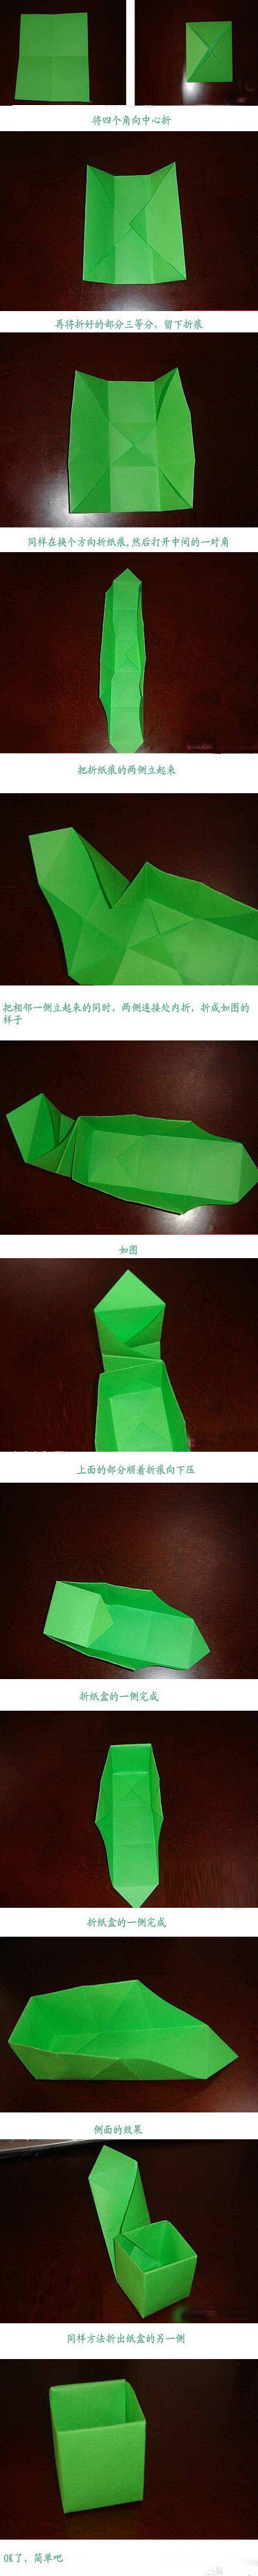 【超简单的折纸盒方法】一张纸就可以折一个实用的纸盒，一看就会